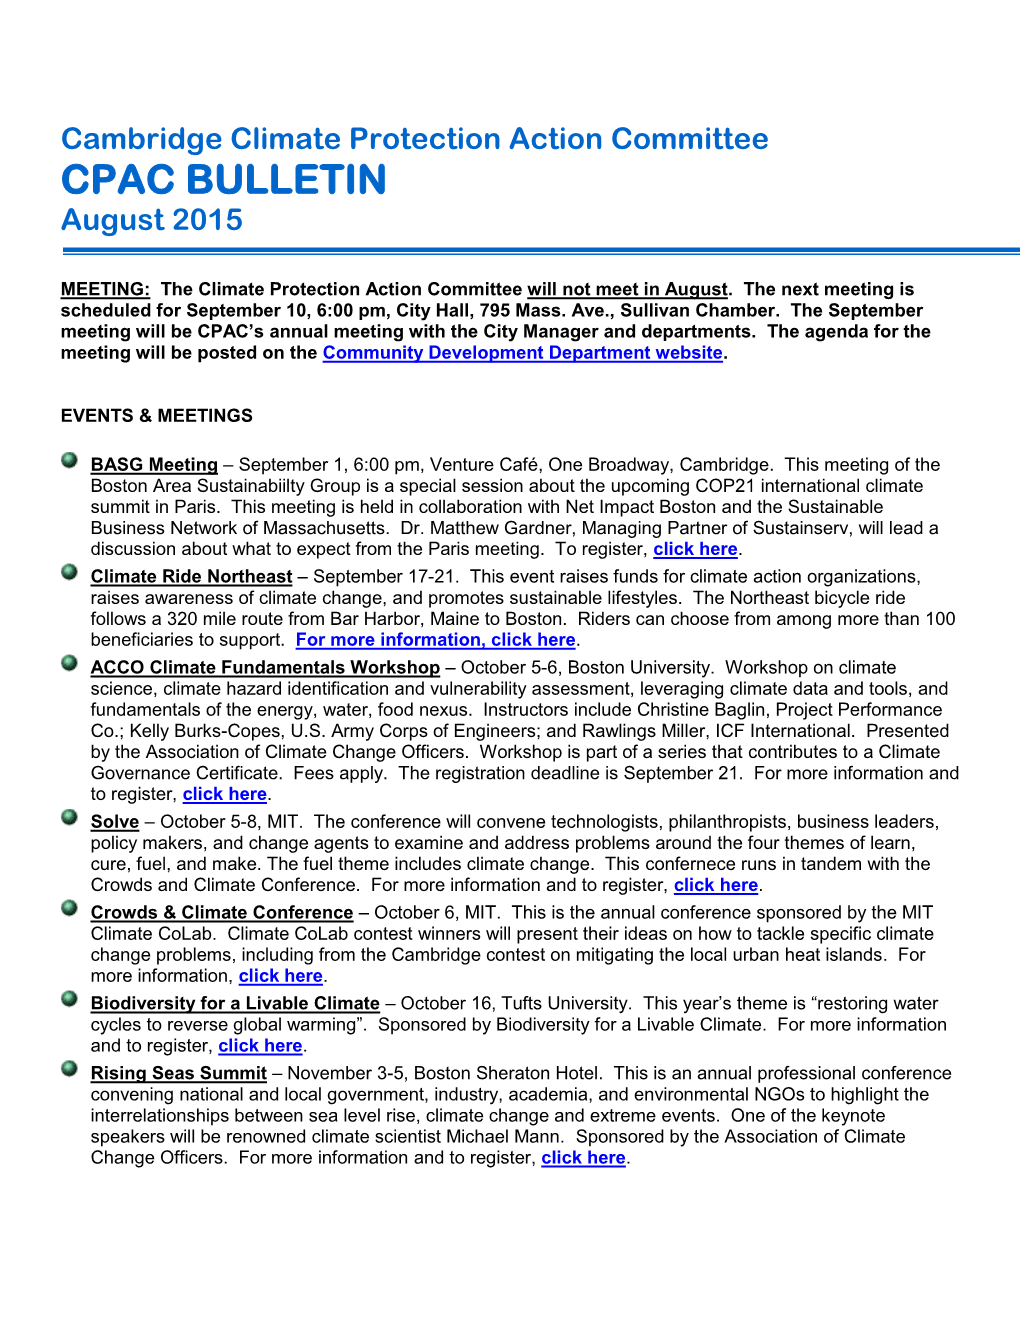 CPAC Bulletin 201508